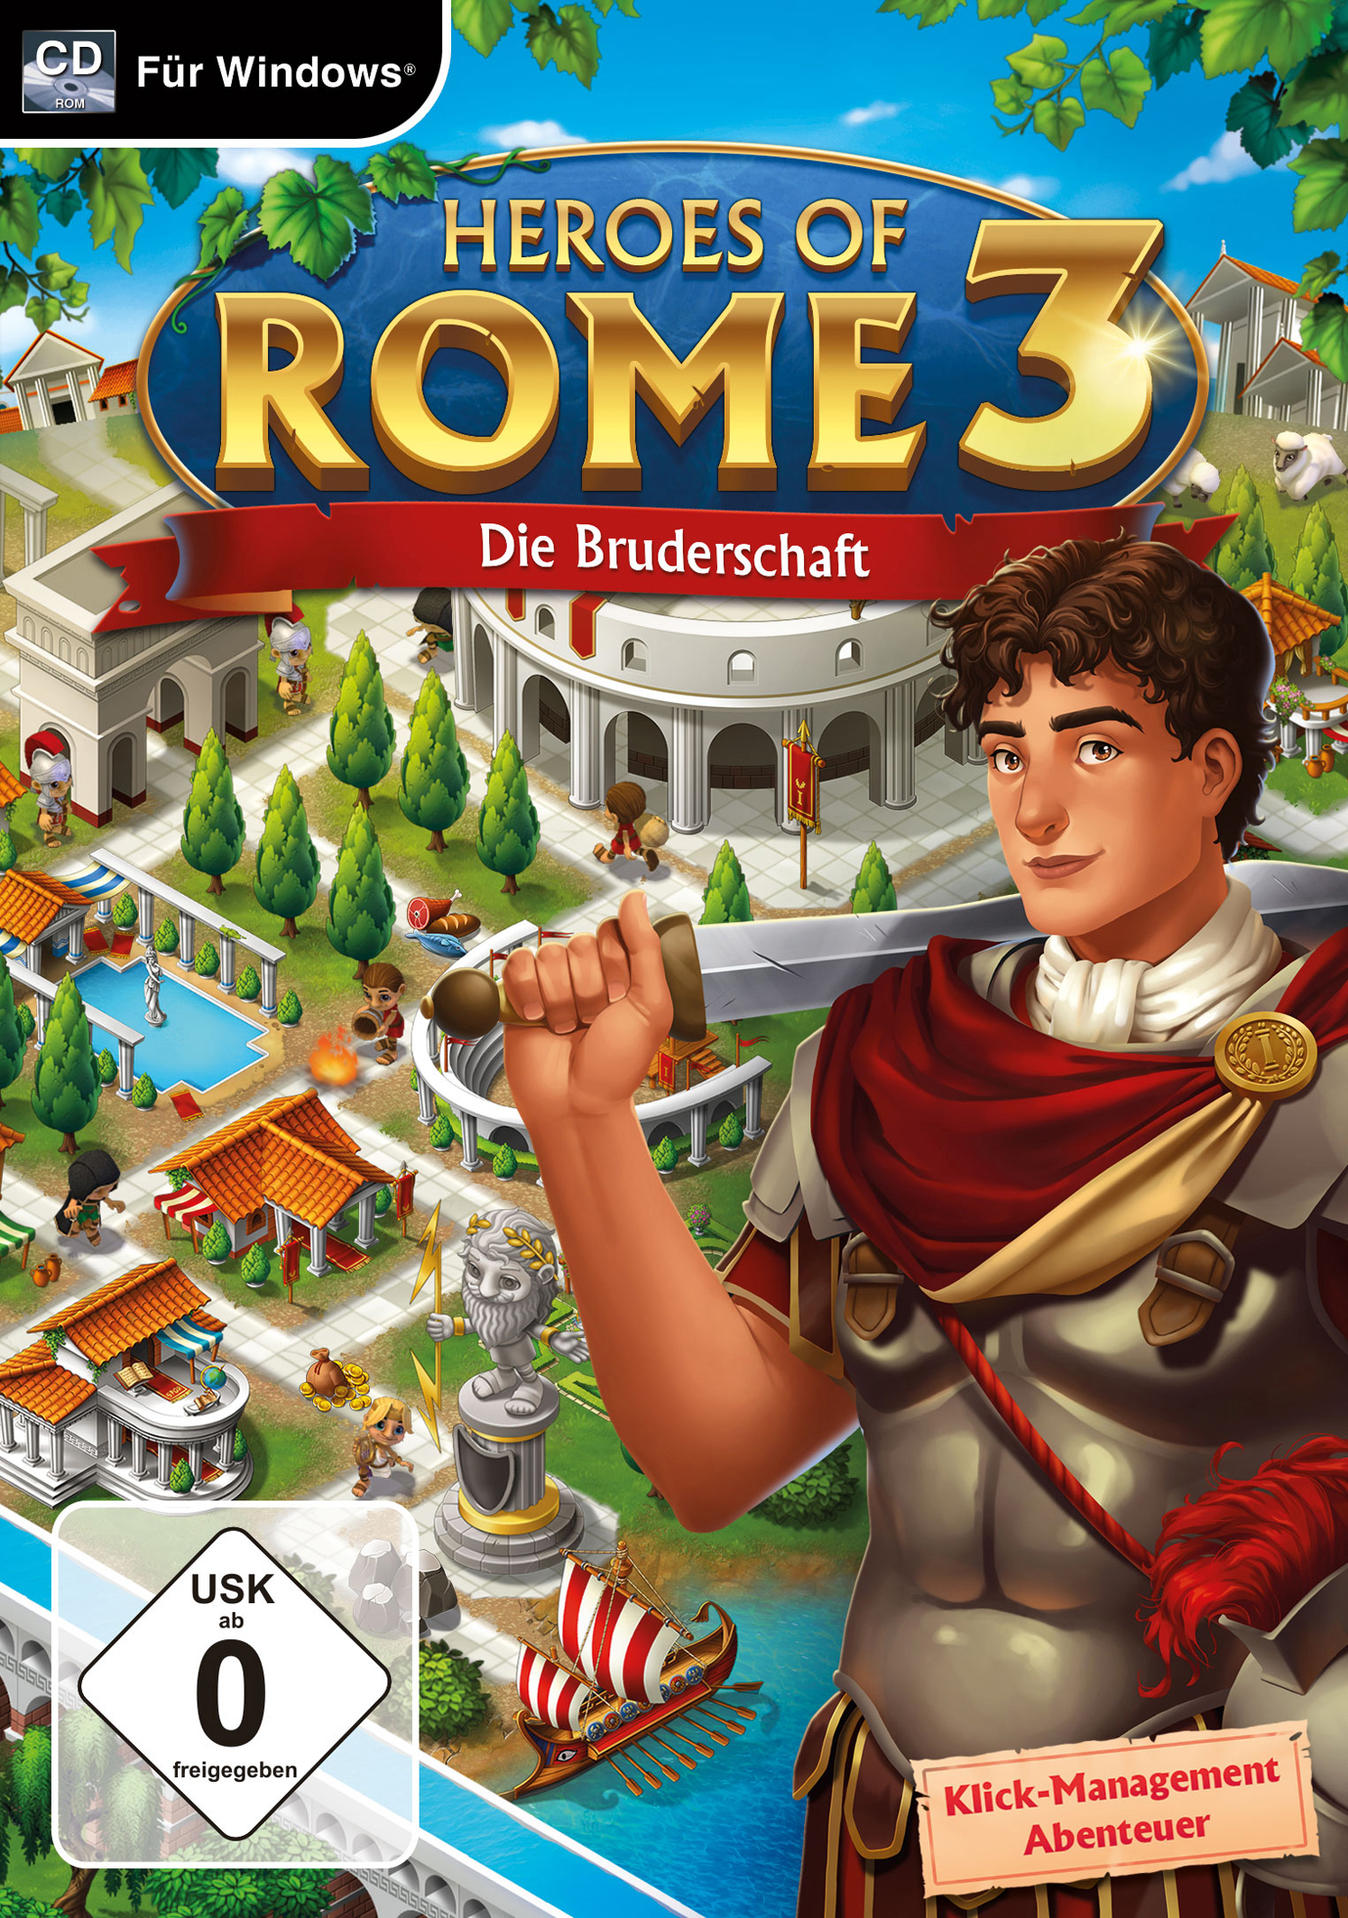 - [PC] of - Heroes 3 Bruderschaft Die Rome